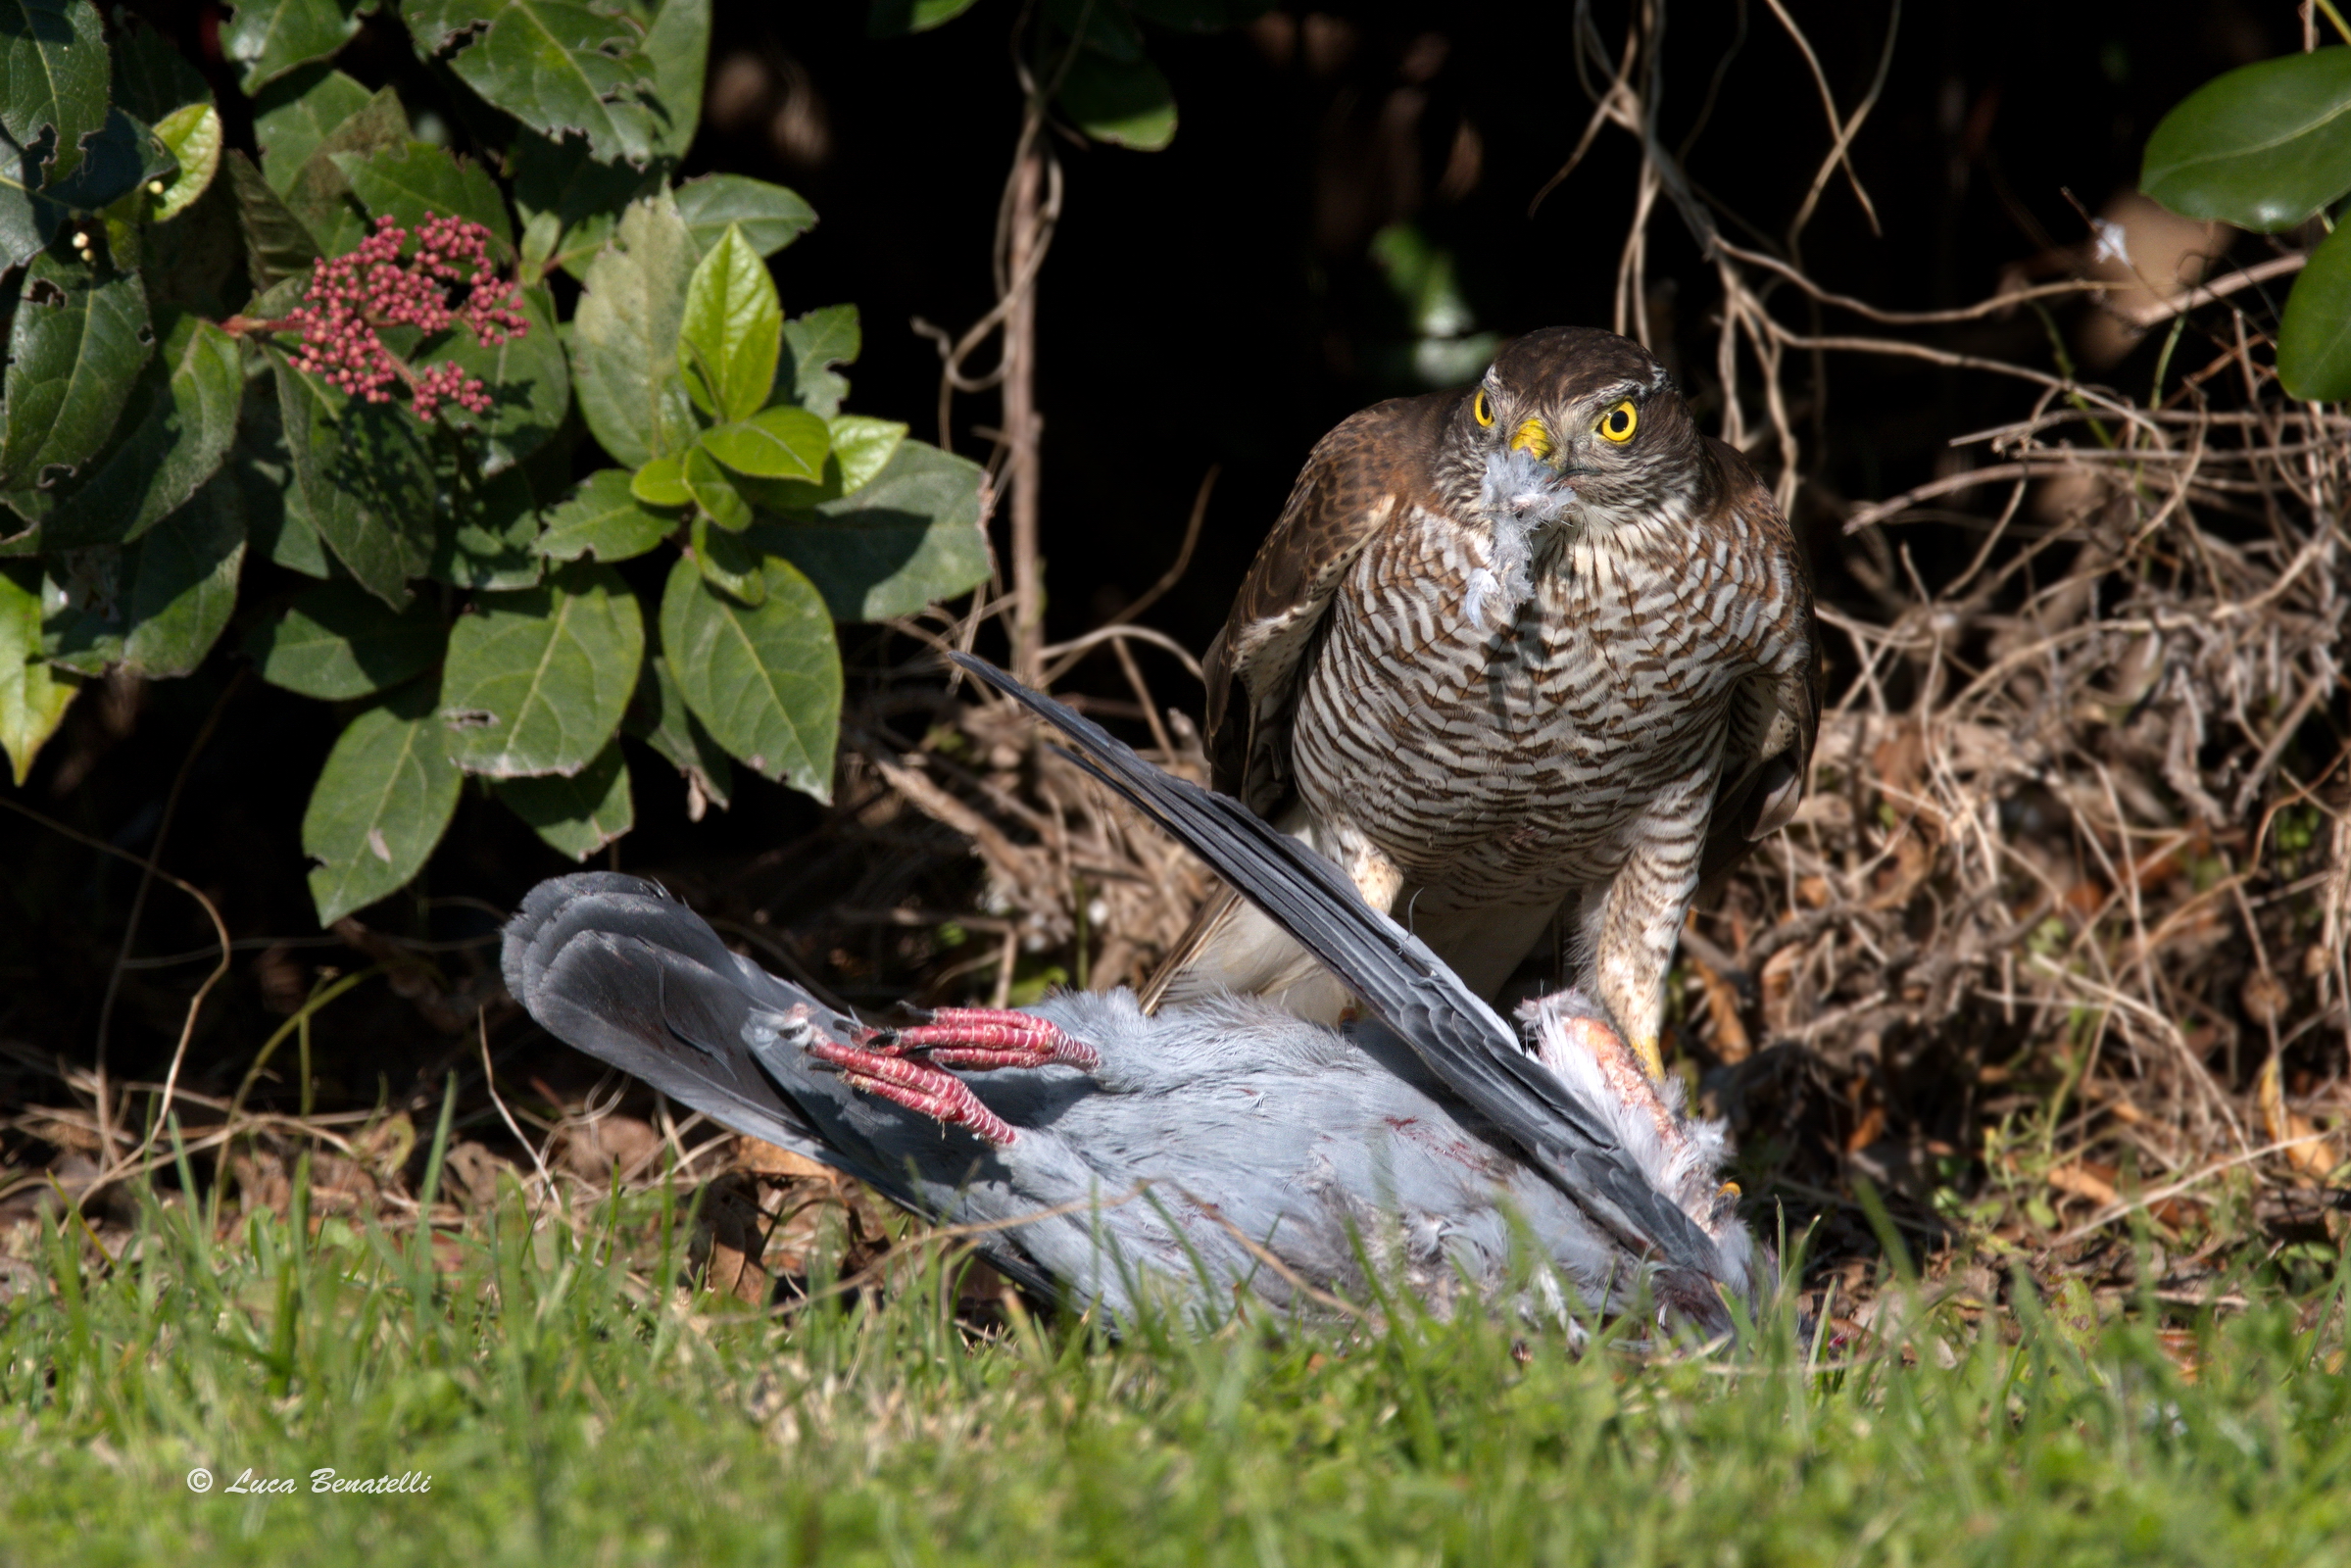 Sparrowhawk with prey...